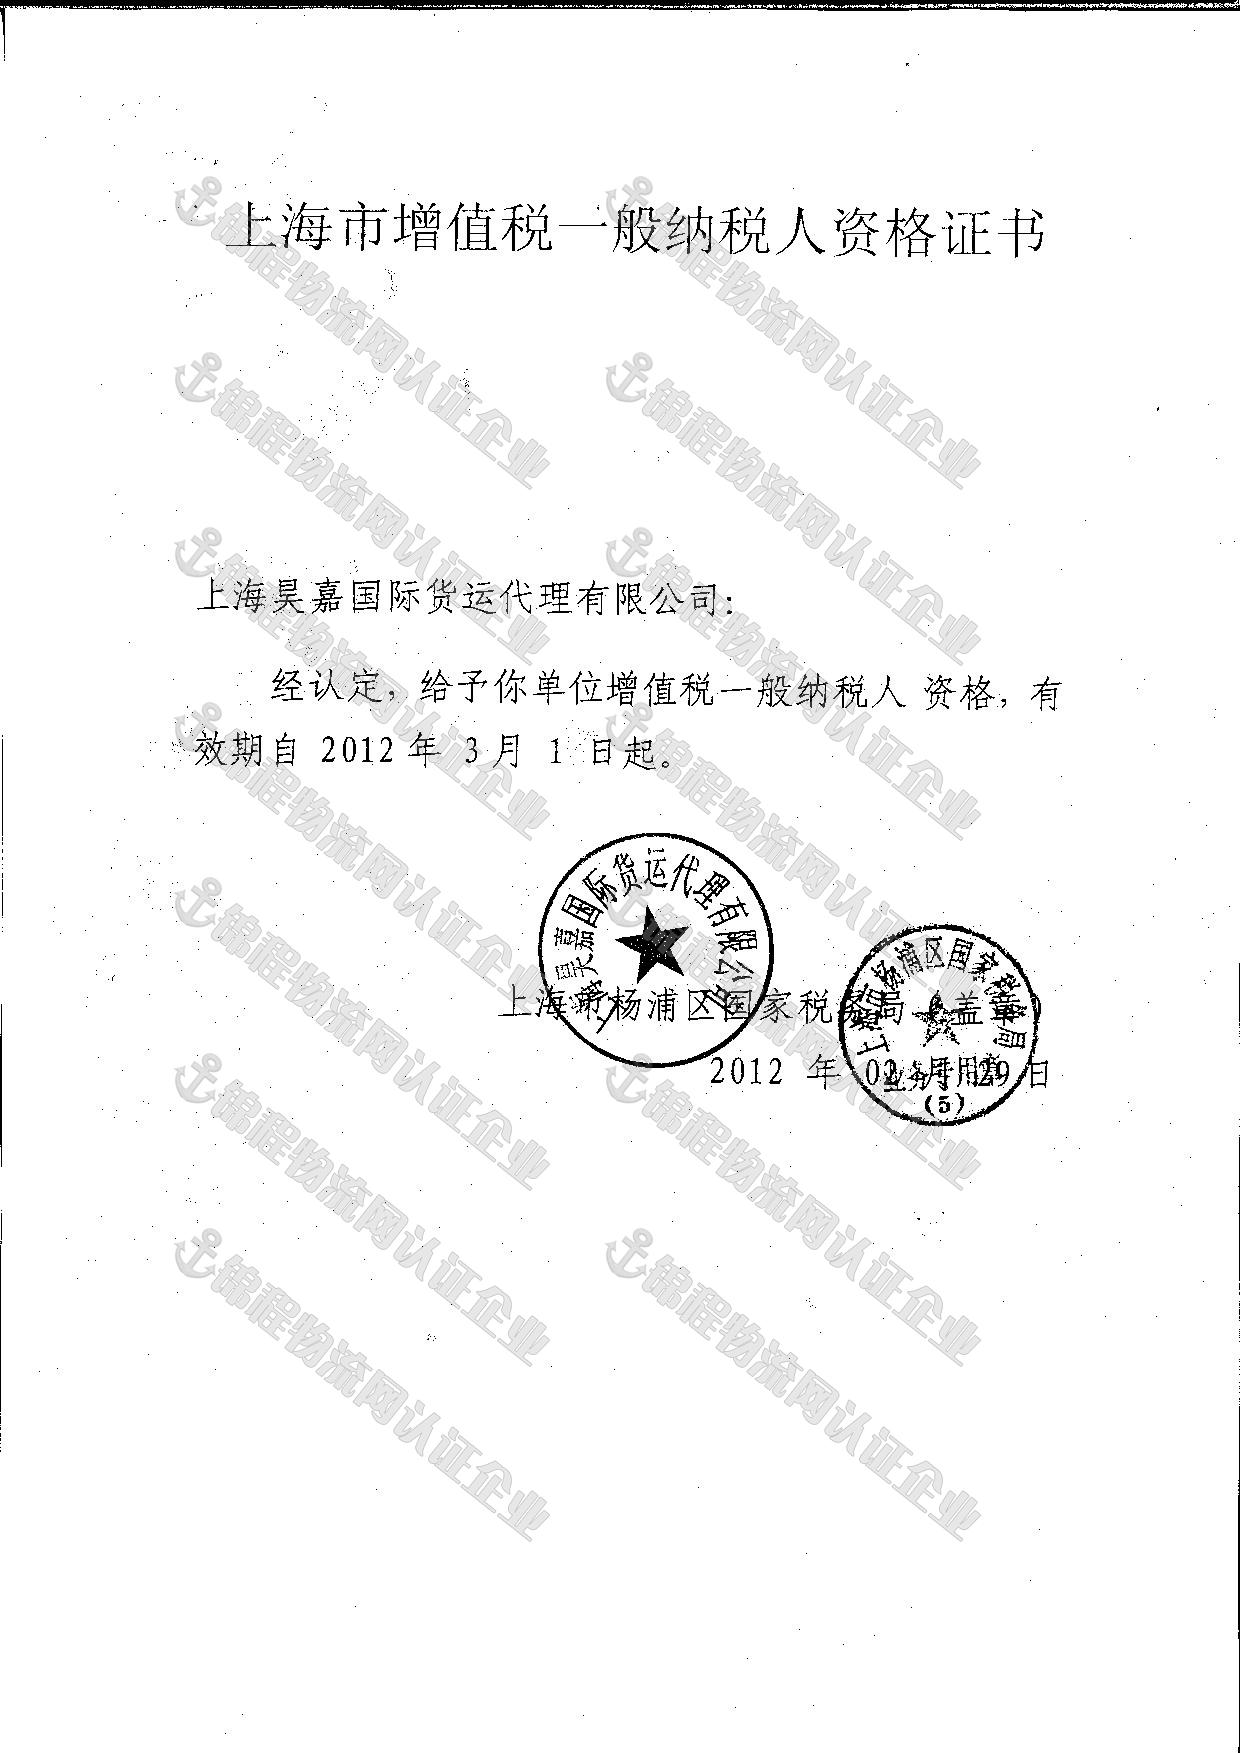 上海昊嘉国际货运代理有限公司 86-021-65685301 信誉通企业第1年